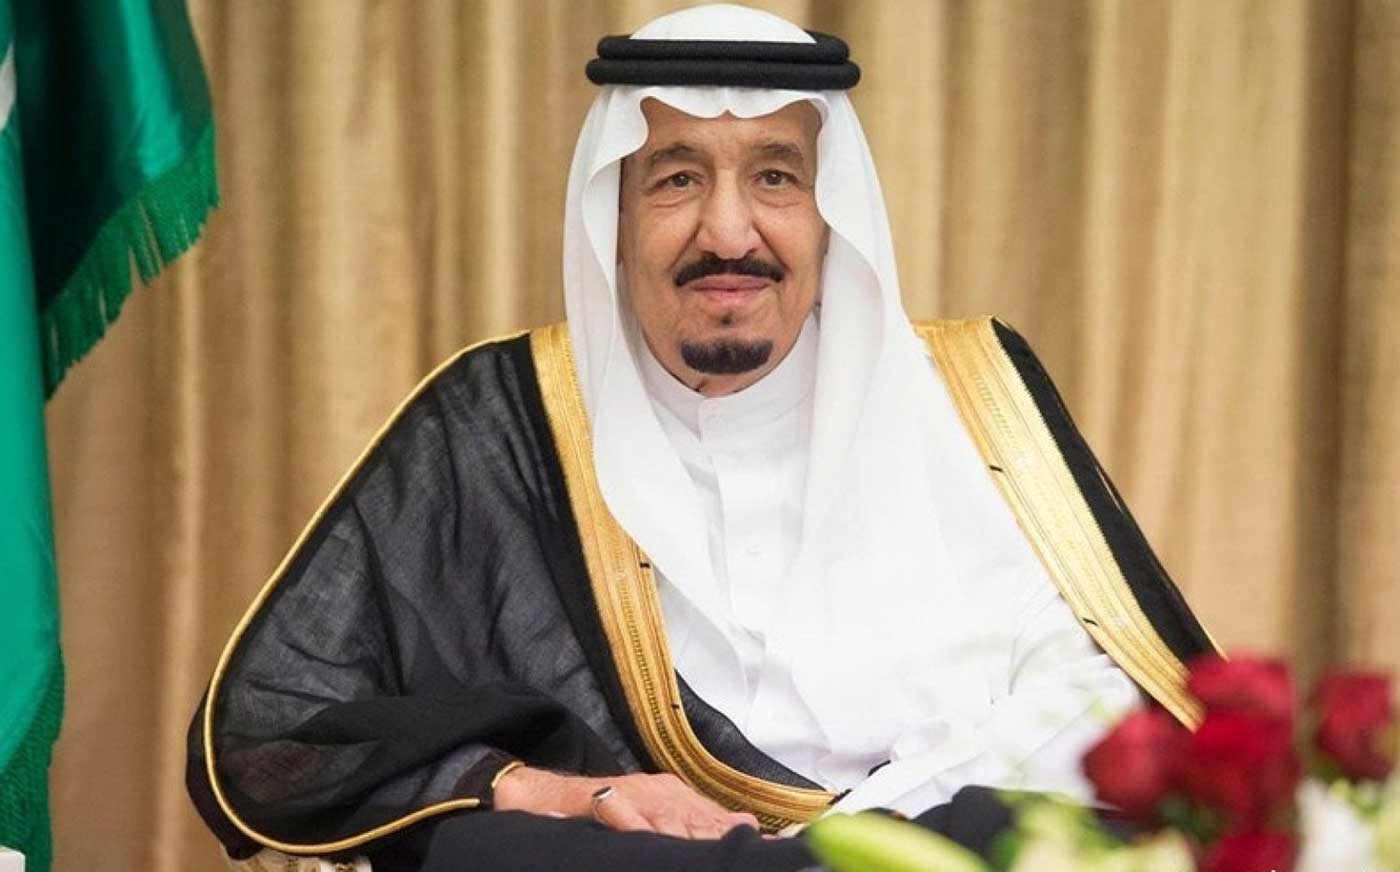 الملك سلمان بن عبدالعزيز يدعو إلى إقامة صلاة الاستسقاء يوم الخميس القادم